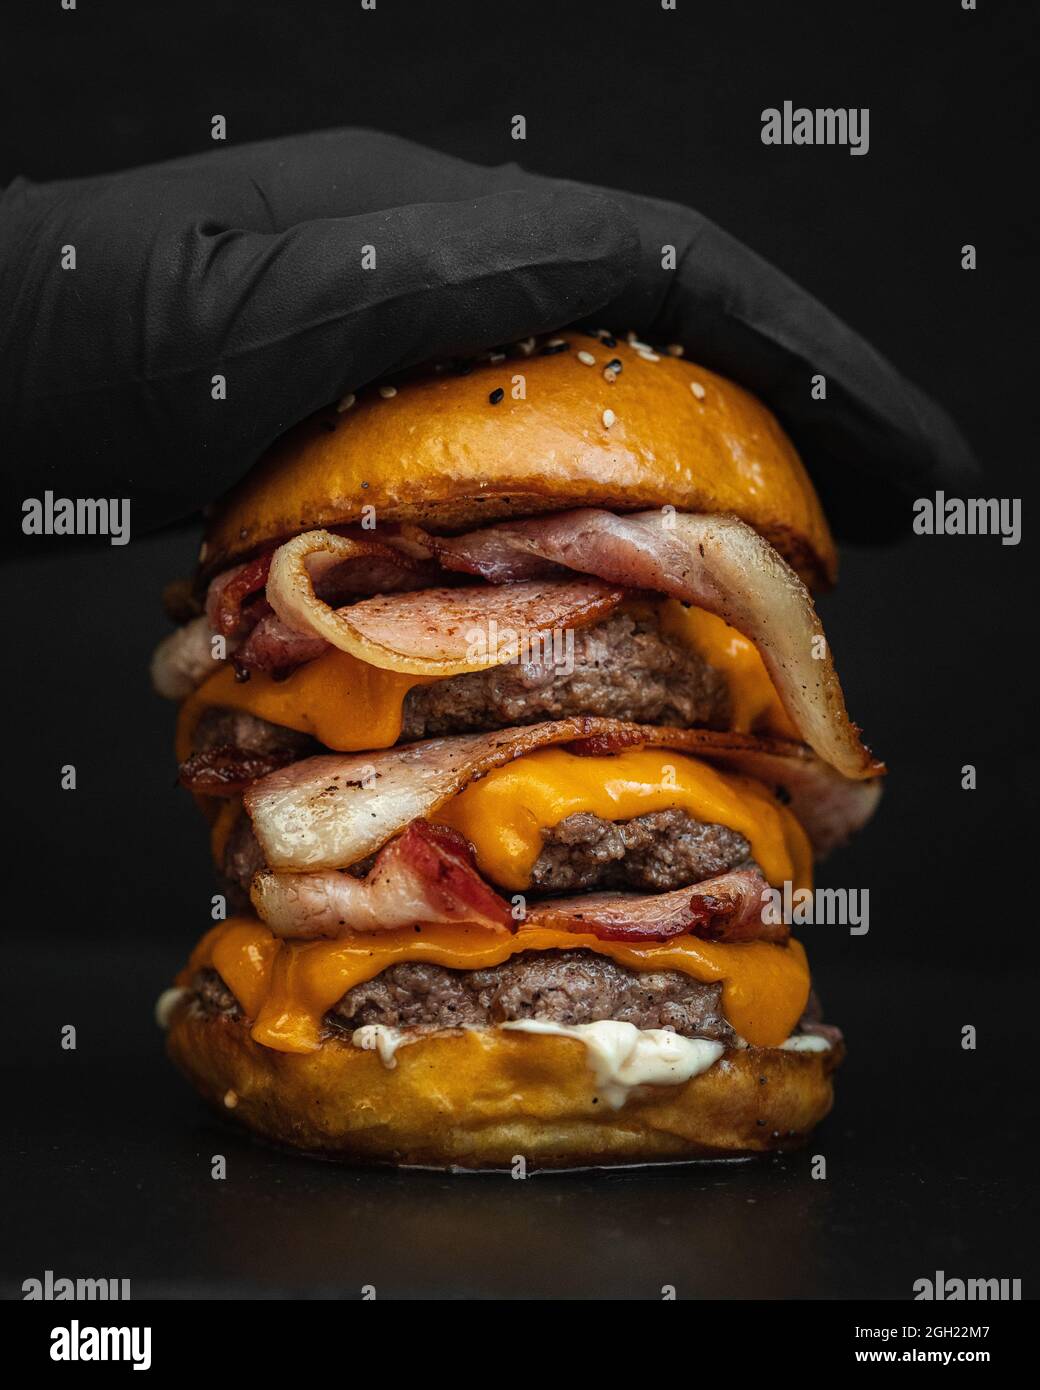 Gros plan d'un délicieux hamburger géant au bacon frit, au fromage fondu et au bœuf Banque D'Images